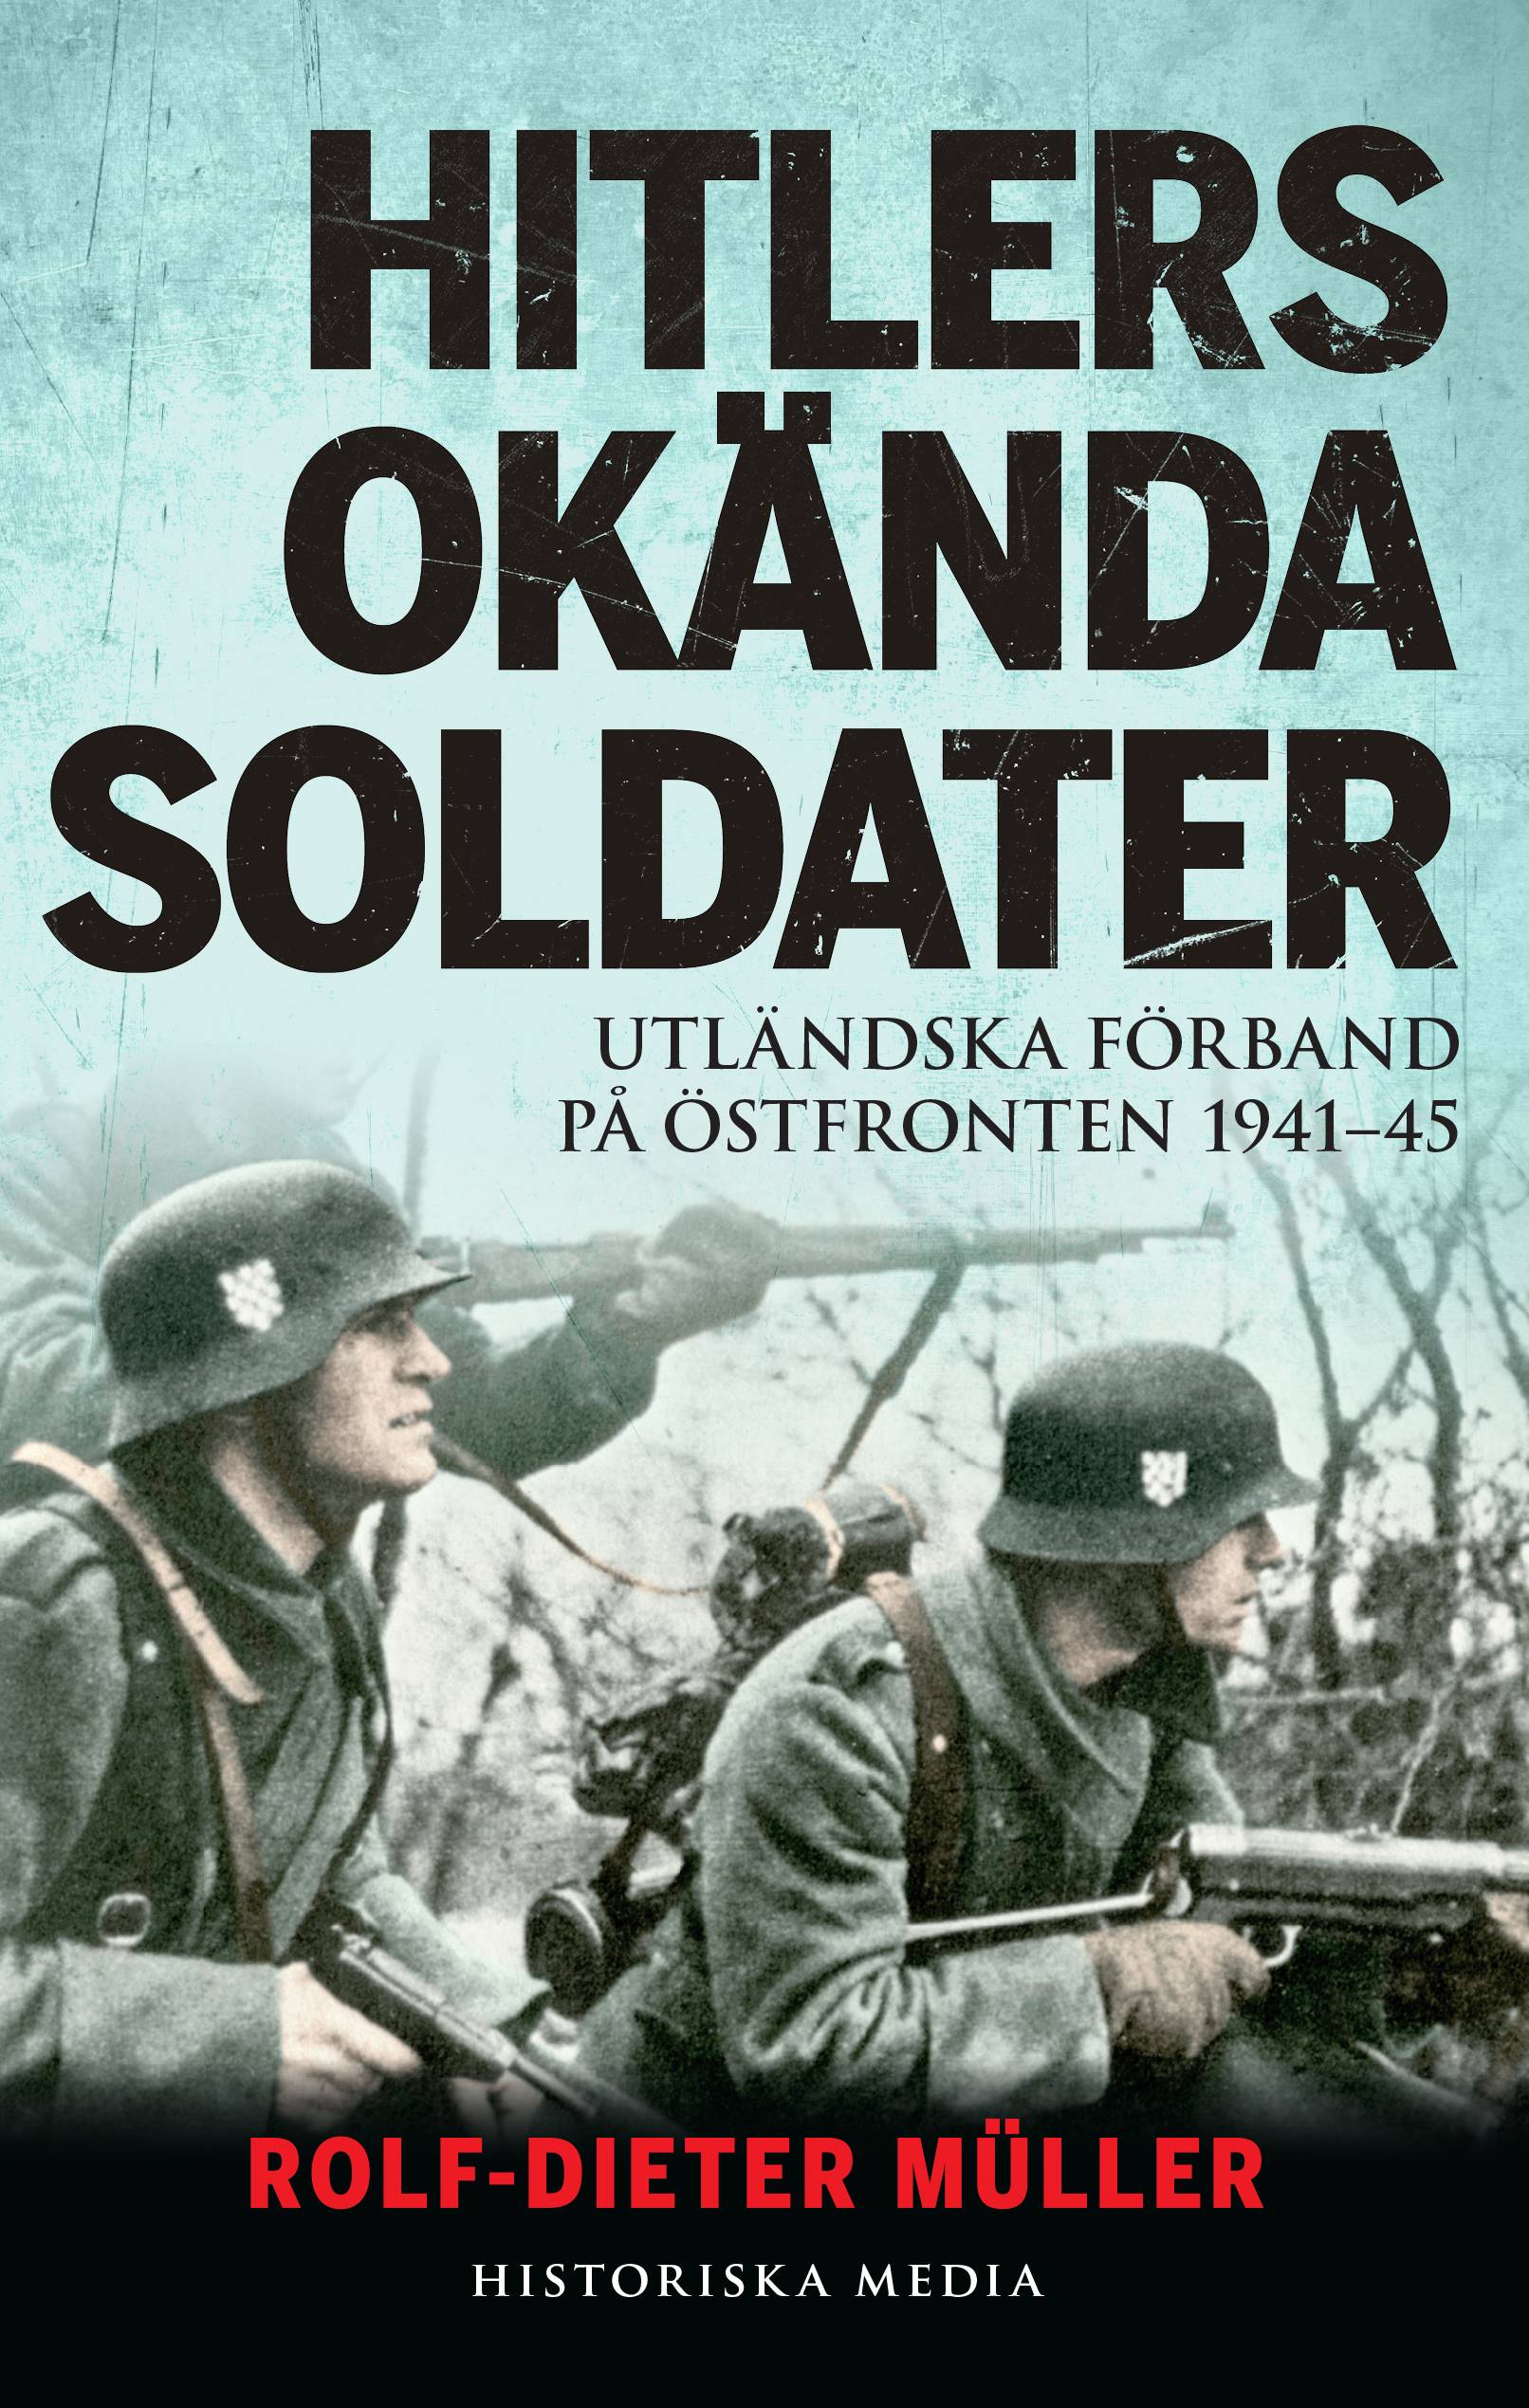 Hitlers okända soldater : utländska förband på östfronten 1941-45